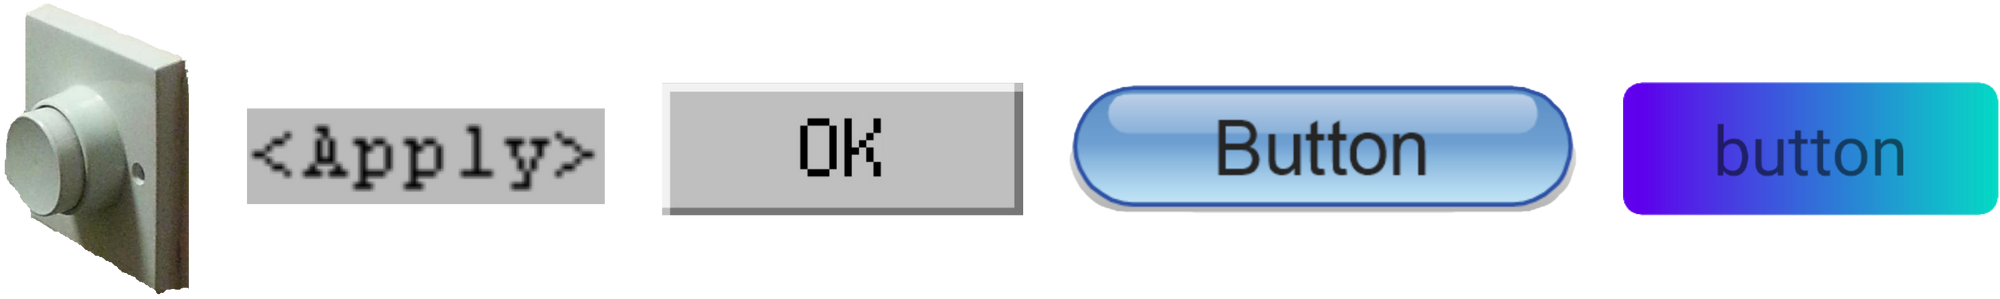 Een horizontale serie afbeeldingen van verschillende knoppen. Van links naar rechts: een fysieke drukknop van plastic met groot rond drukvlak; een tekst-knop gemaakt van zwarte tekst "<Apply>" op grijze achtergrond; een grafische knop met zwarte gecentreerde tekst "OK" op grijze achtergrond; een blauwe knop met zwarte gecentreerde tekst "Button", waarbij de knop ronde hoeken heeft en een diepte-effect vertoont; een knop met paars-blauw-groen gradient achtergrond en de zwarte gecentreerde tekst "button".